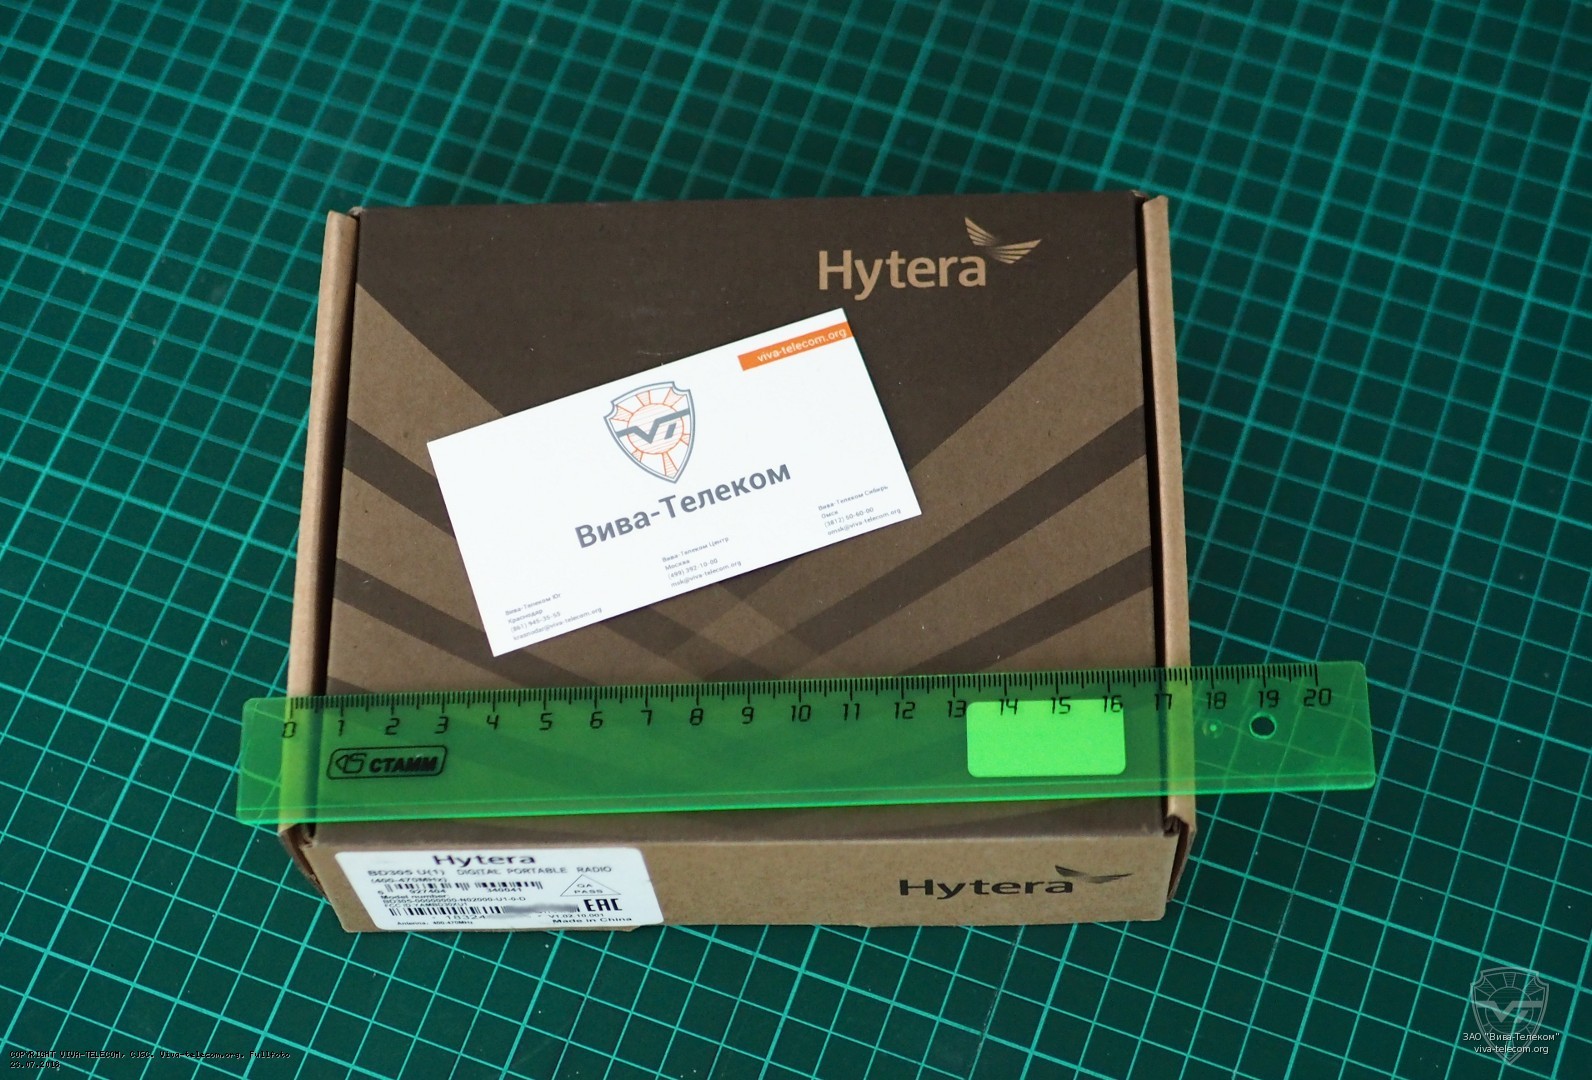    Hytera BD-305